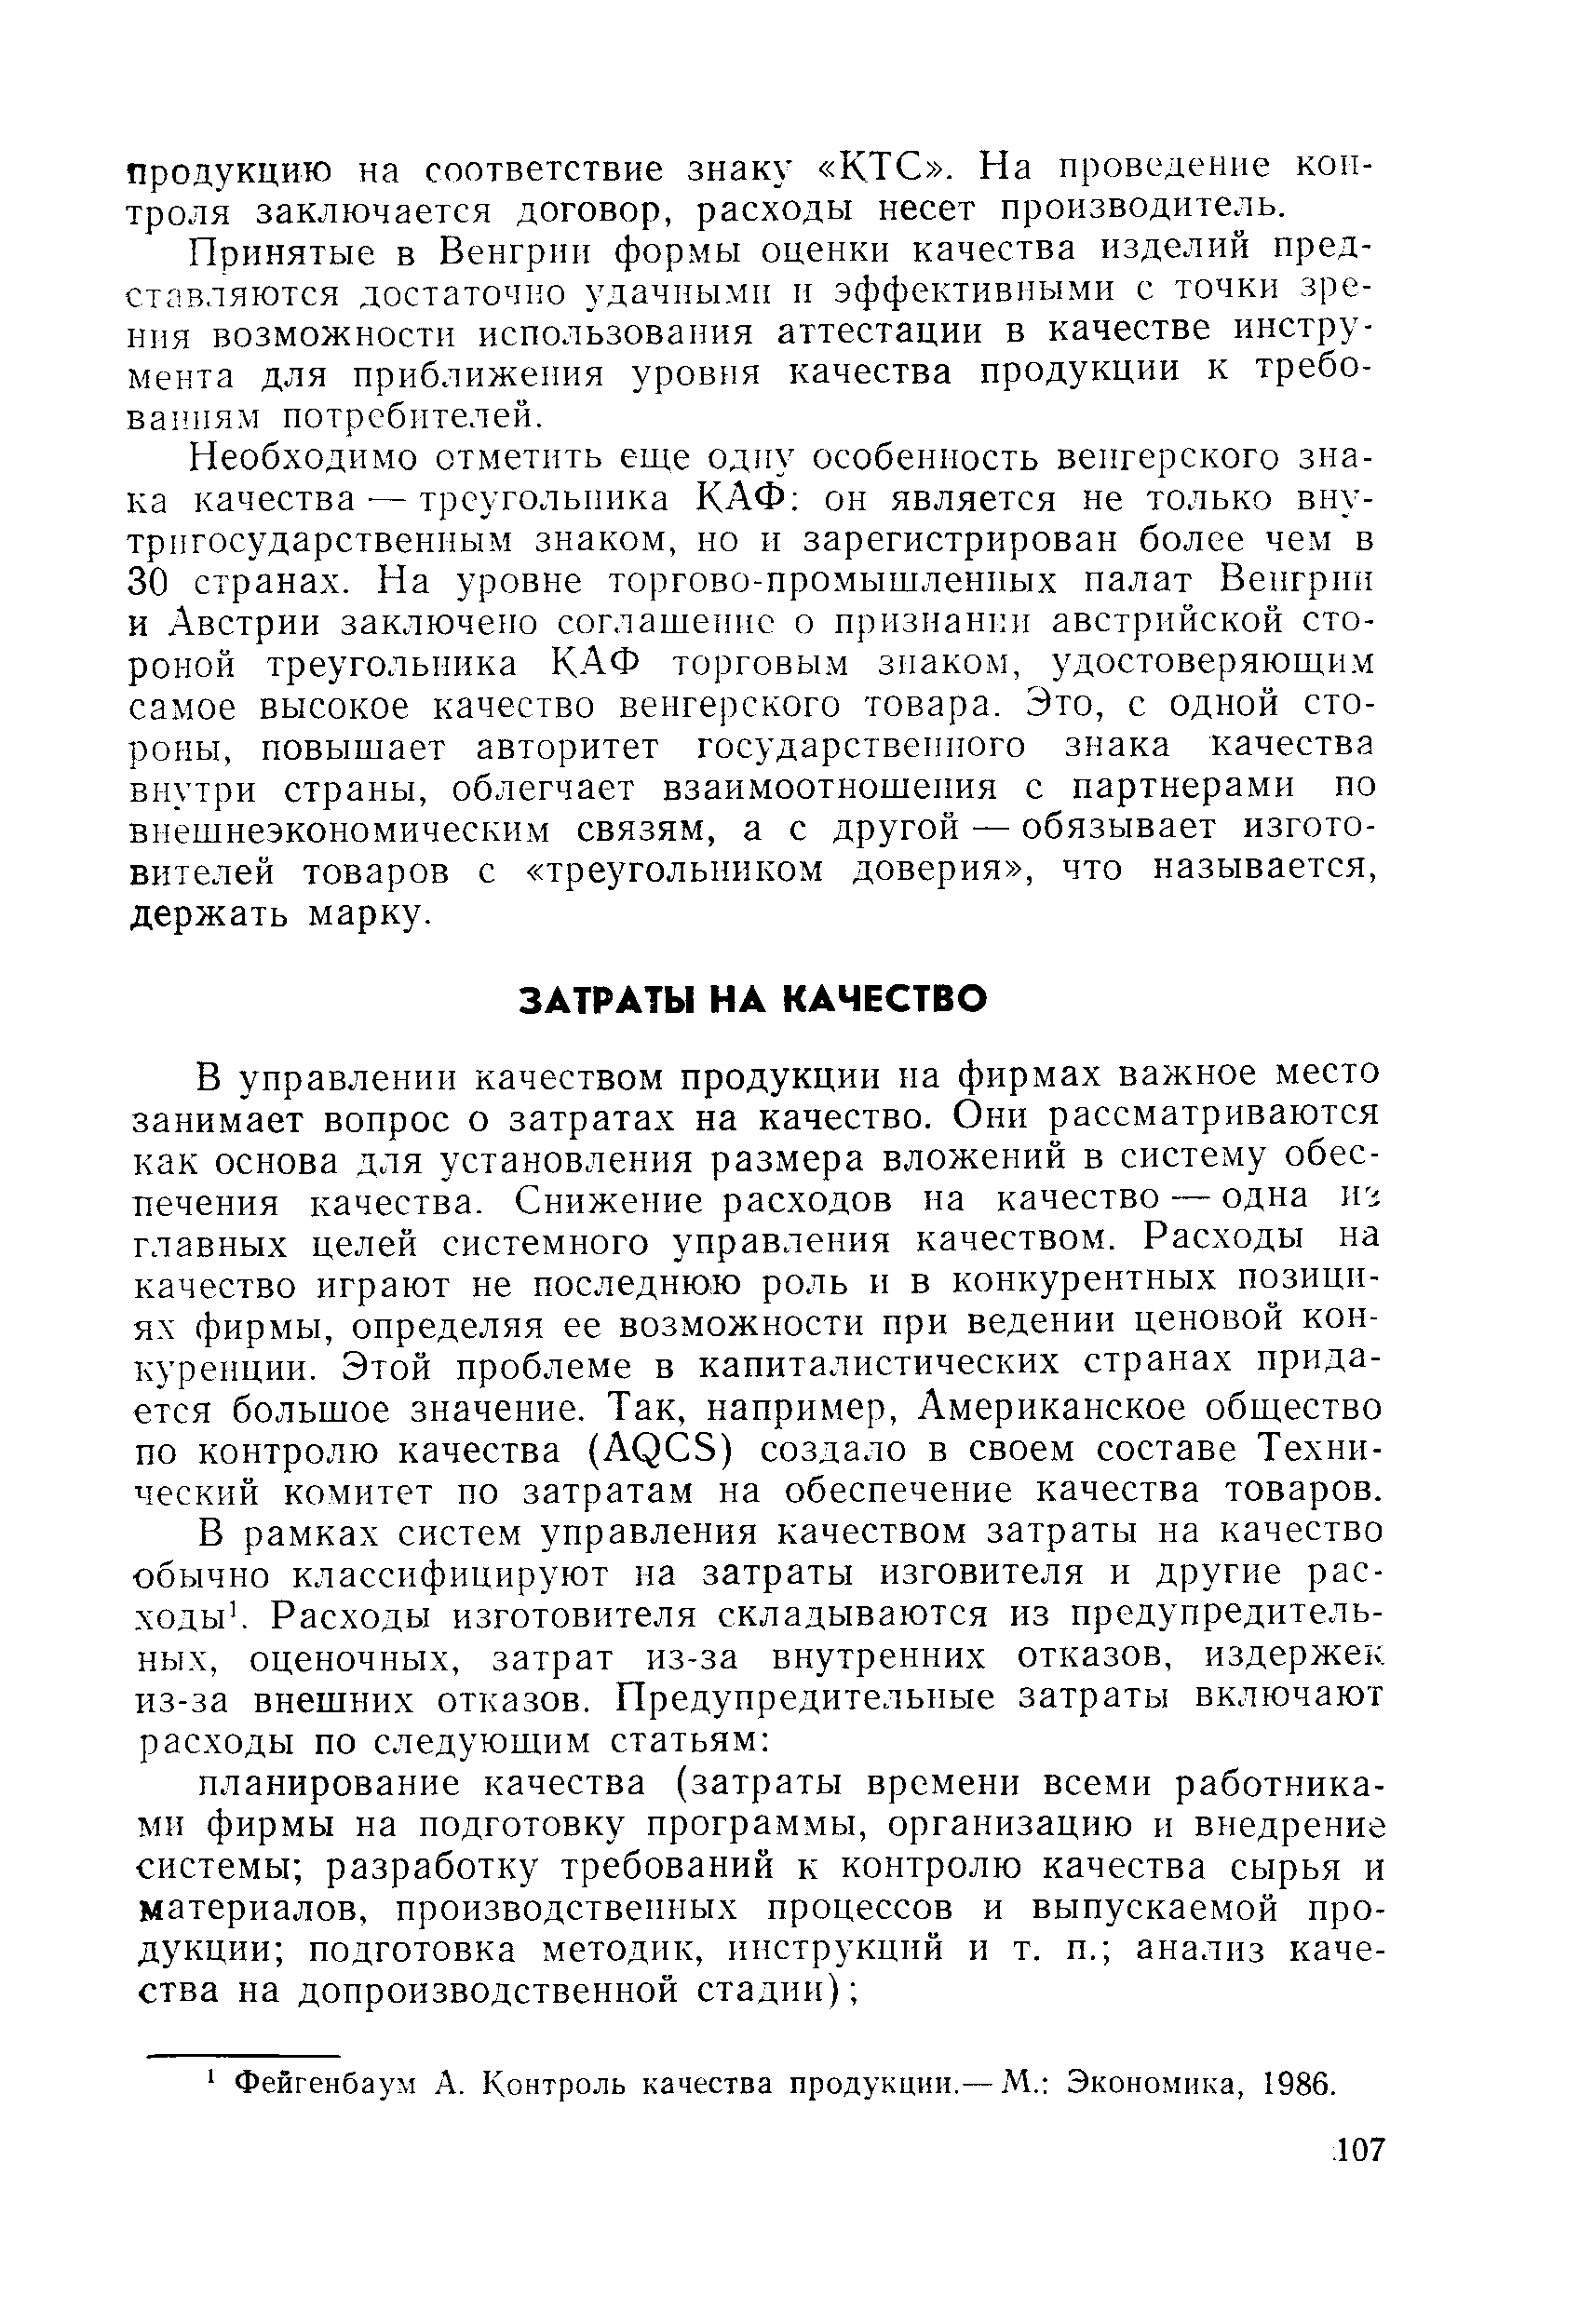 Фейгенбаум А. Контроль качества продукции.— М. Экономика, 1986.
